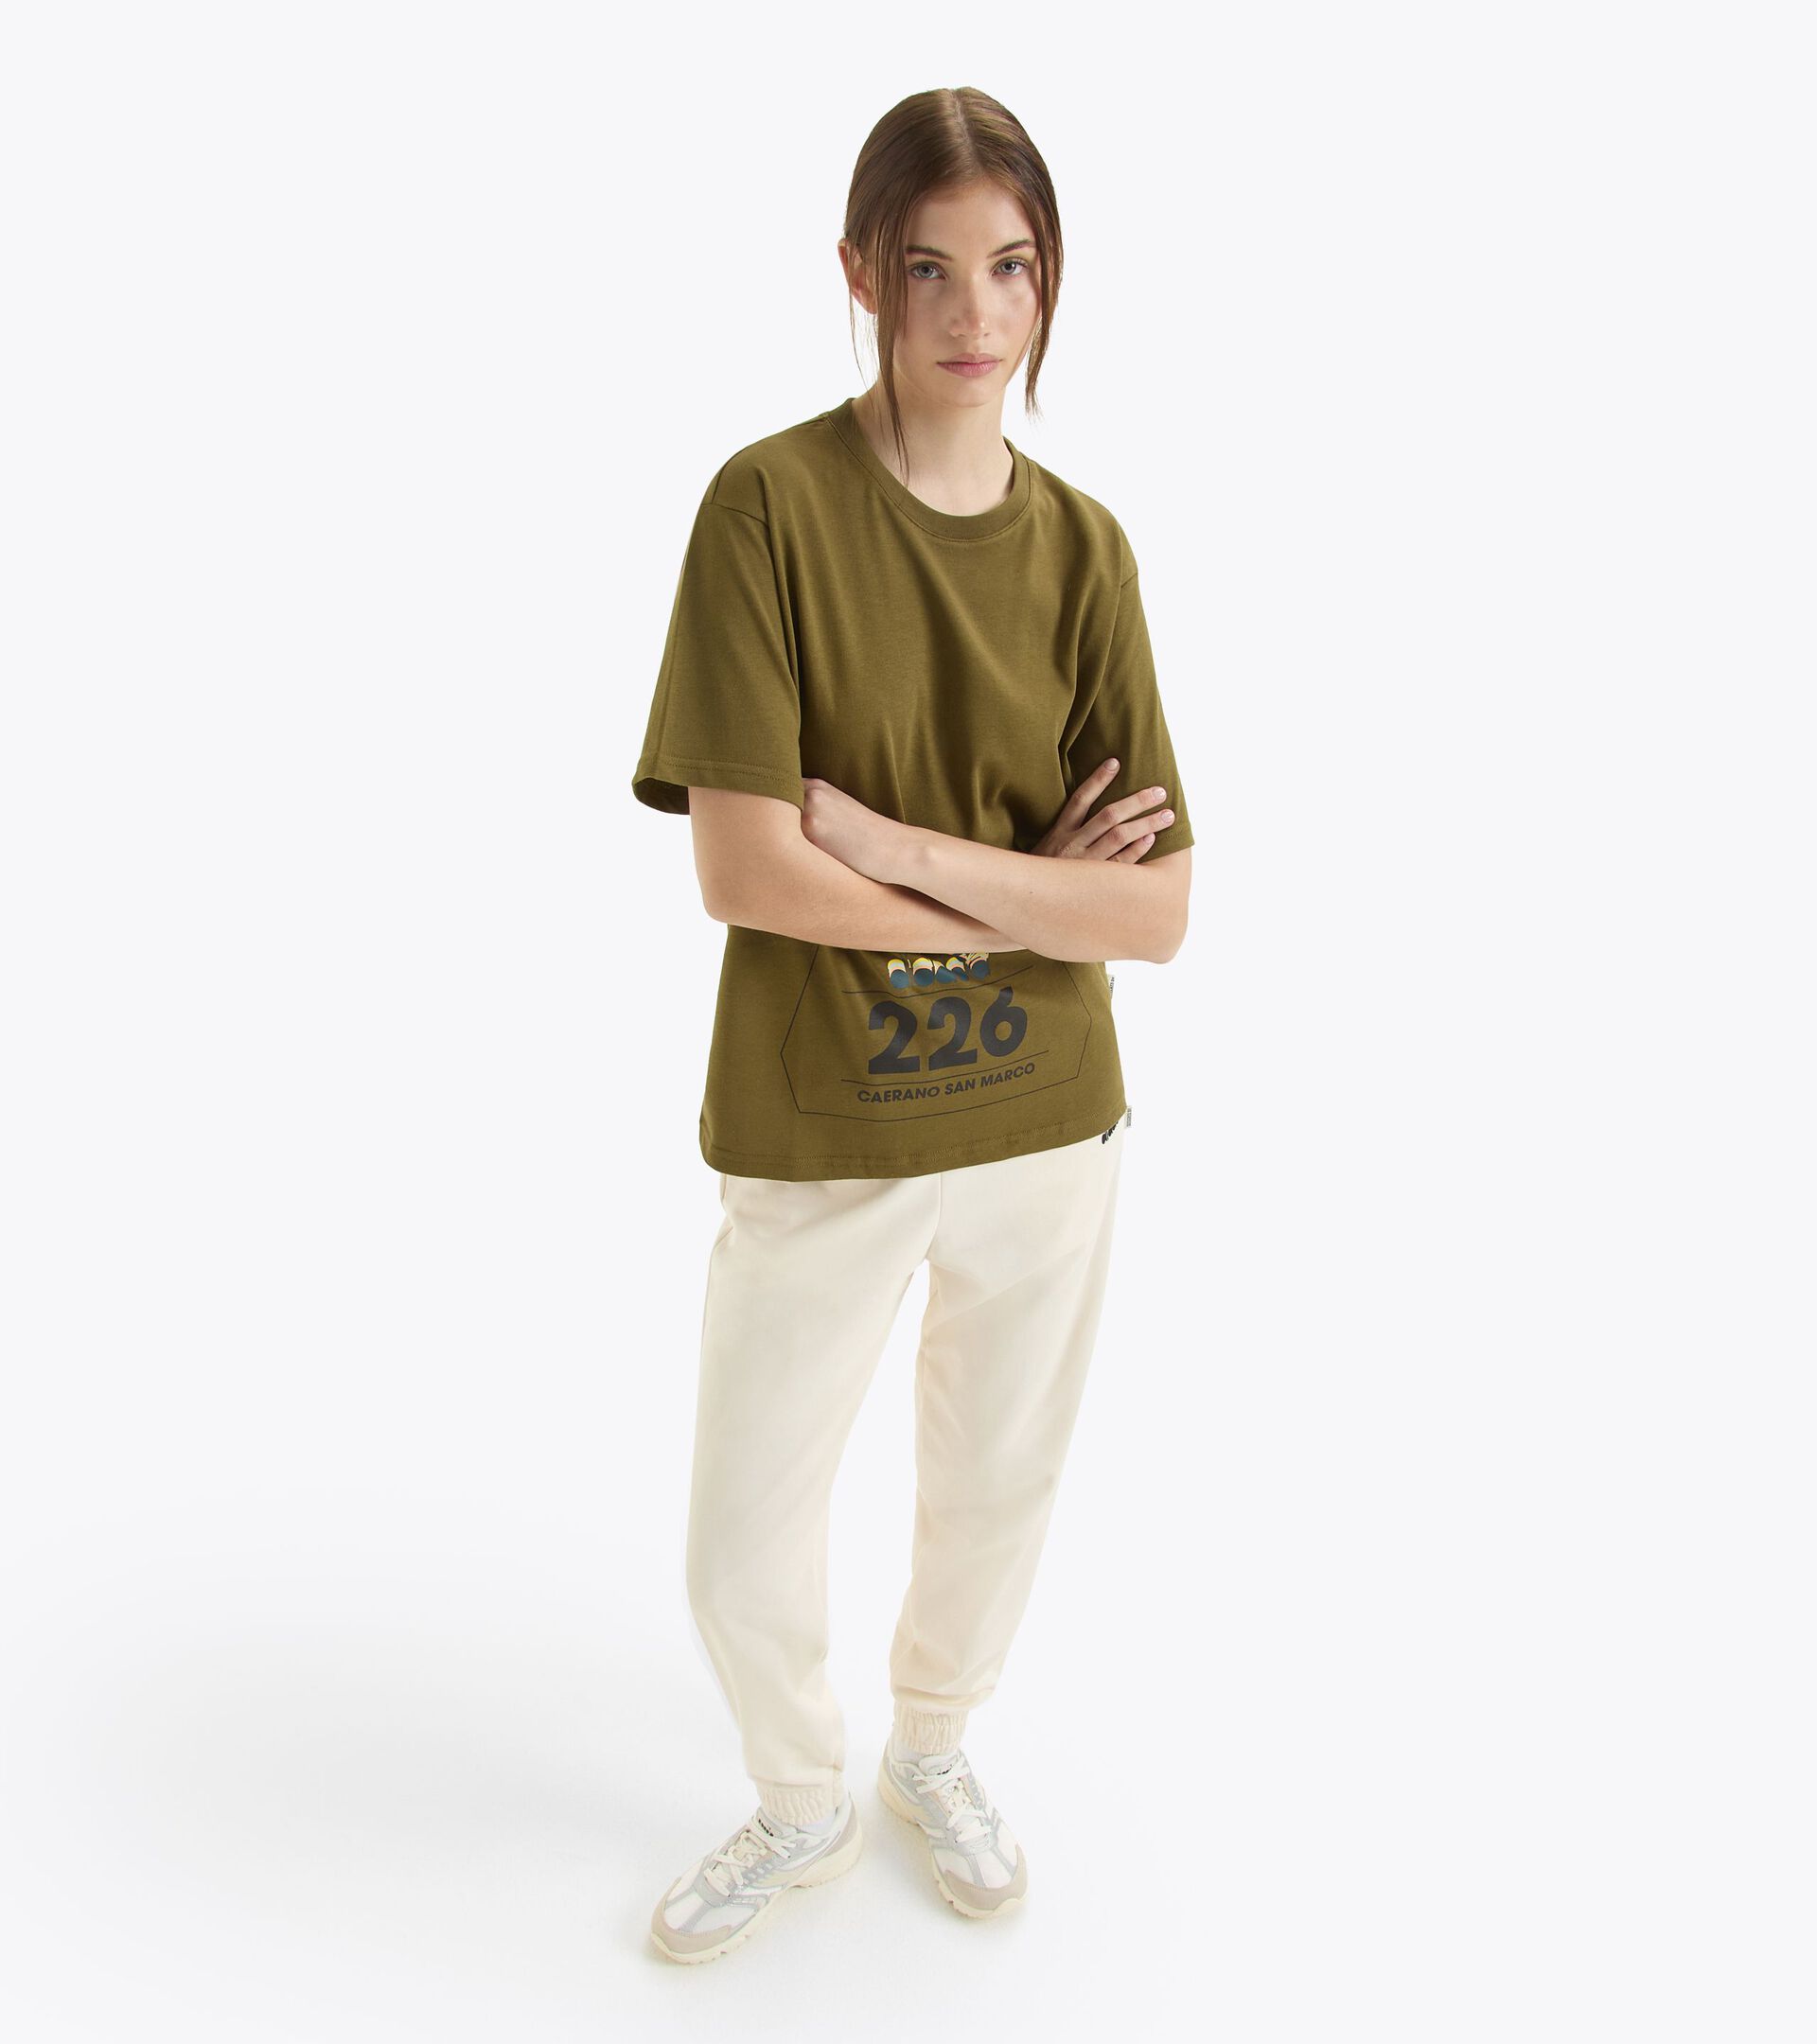 T-shirt - Gender Neutral
 T-SHIRT SS G.D. 1984 (226) VERDE KIWI - Diadora